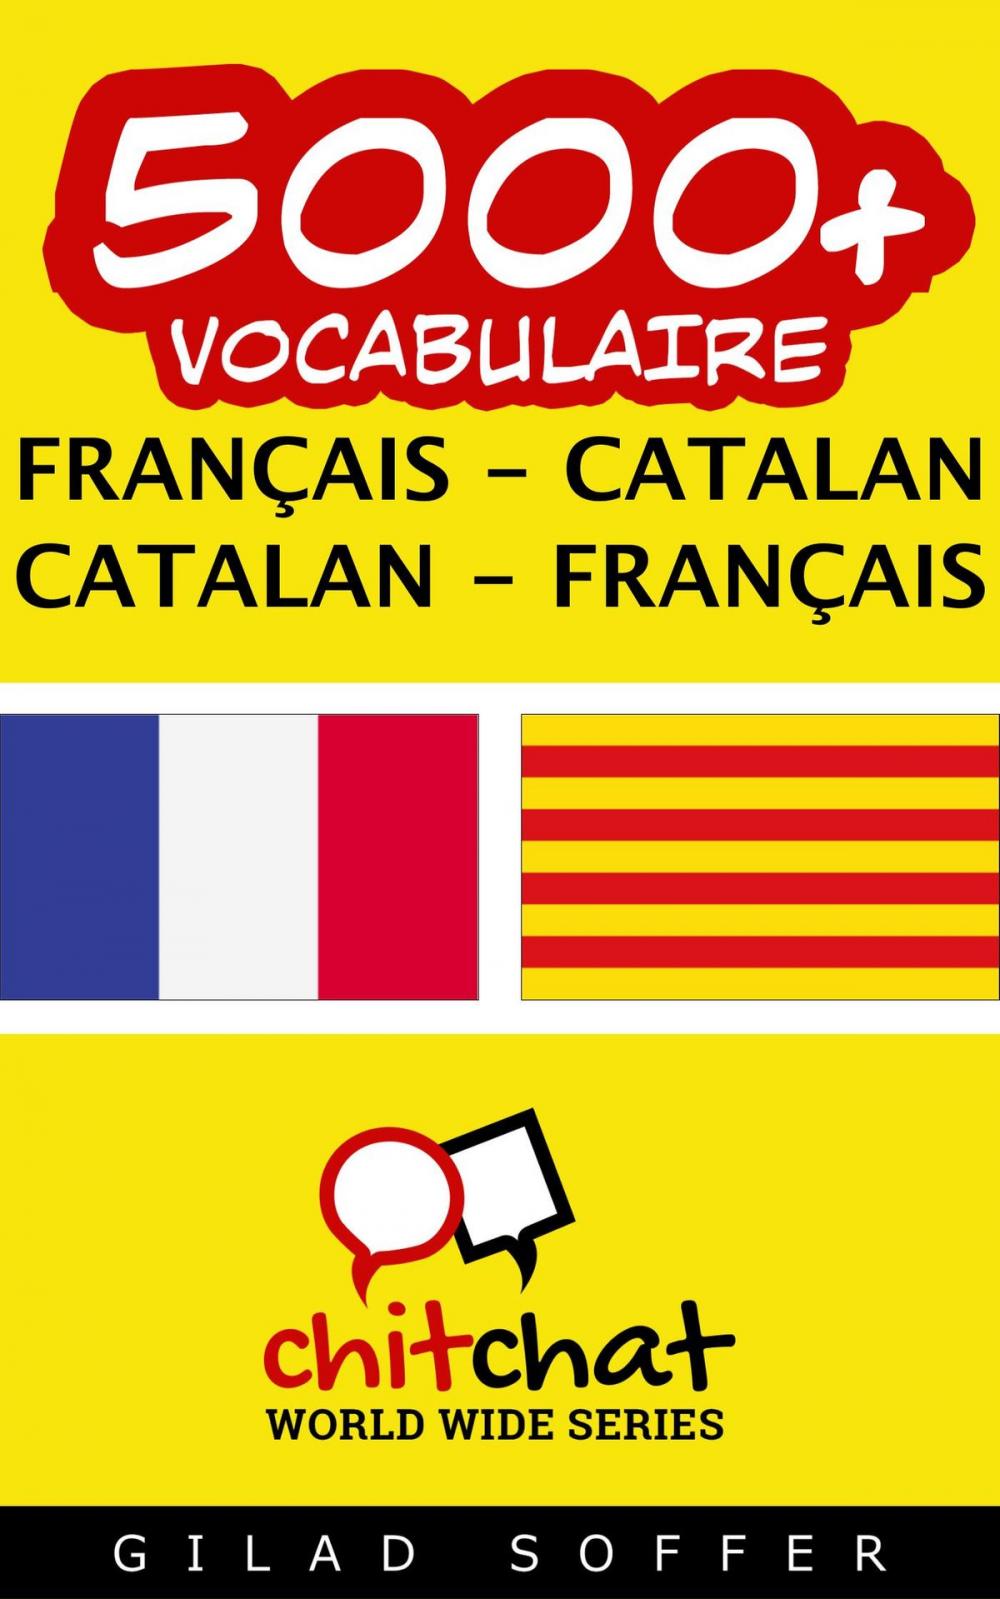 Big bigCover of 5000+ vocabulaire Français - Catalan